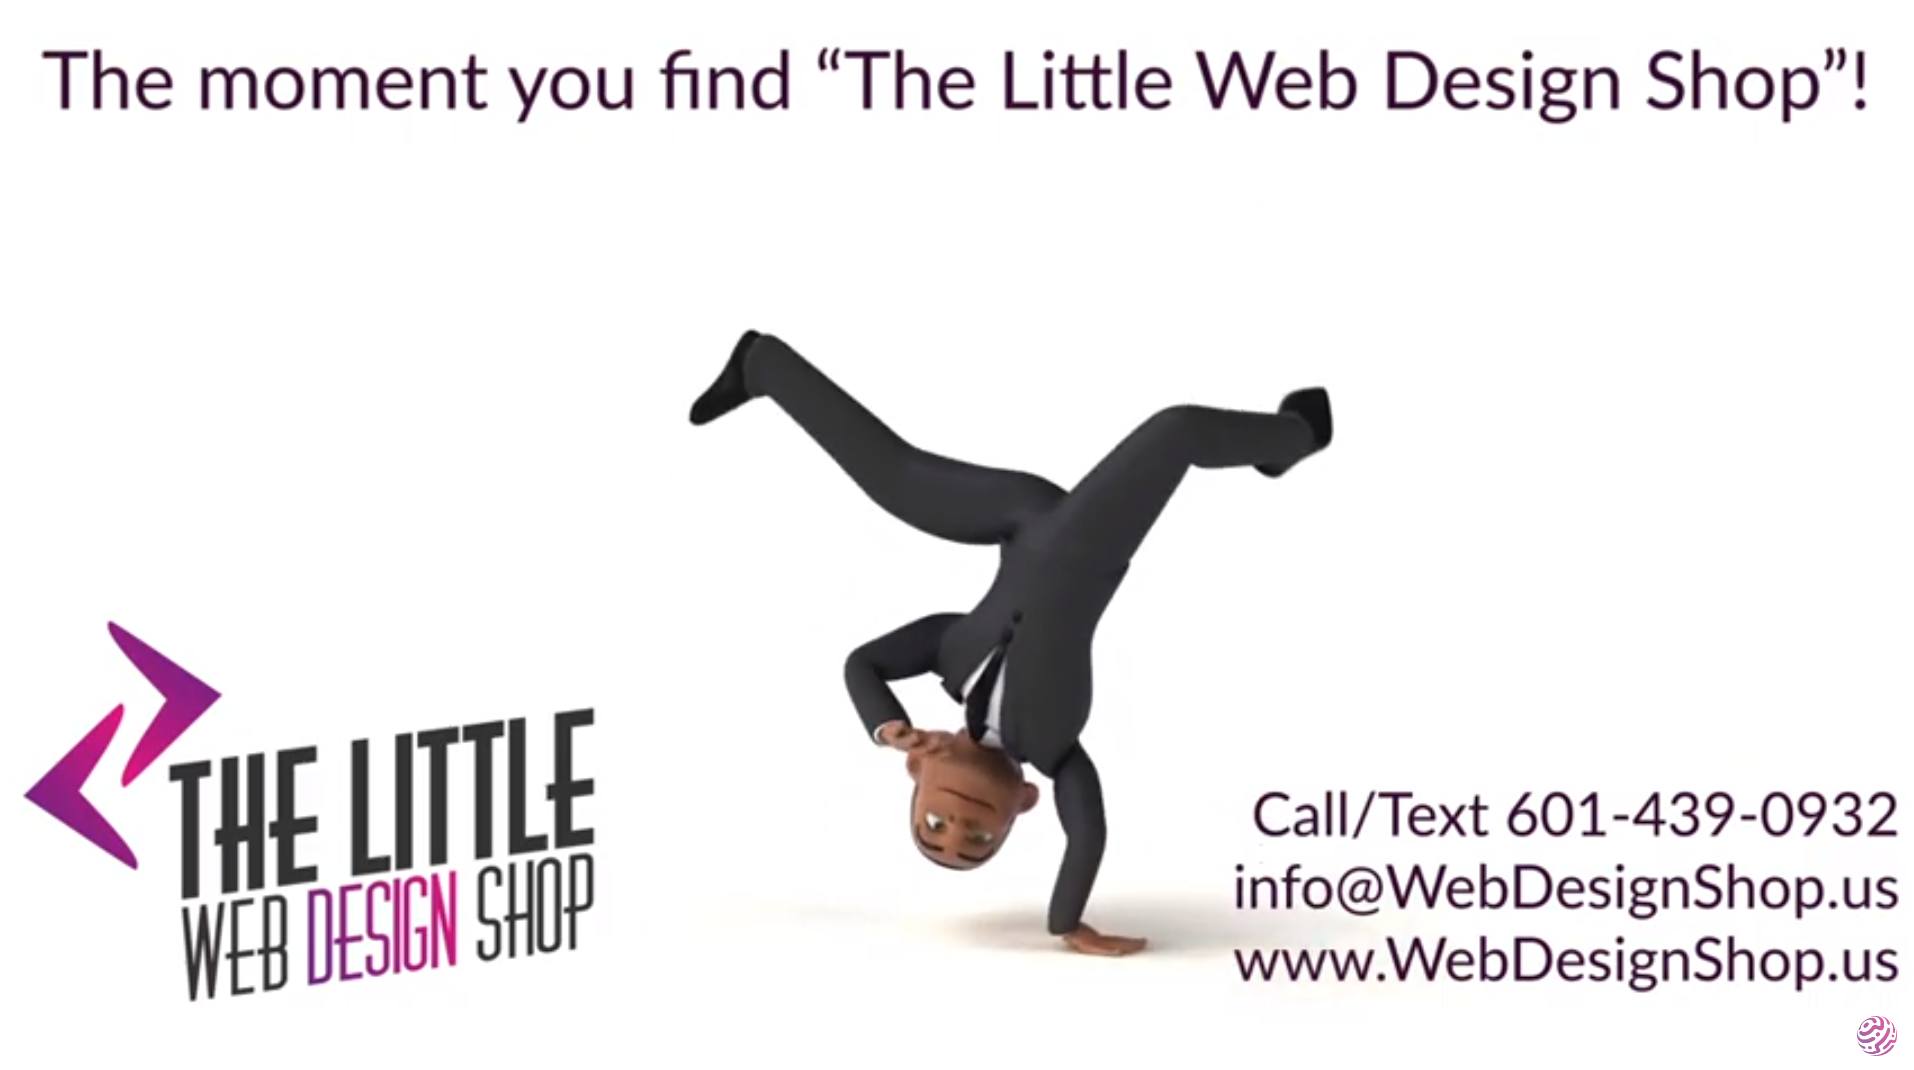 The Little Web Design Shop Dancing Man